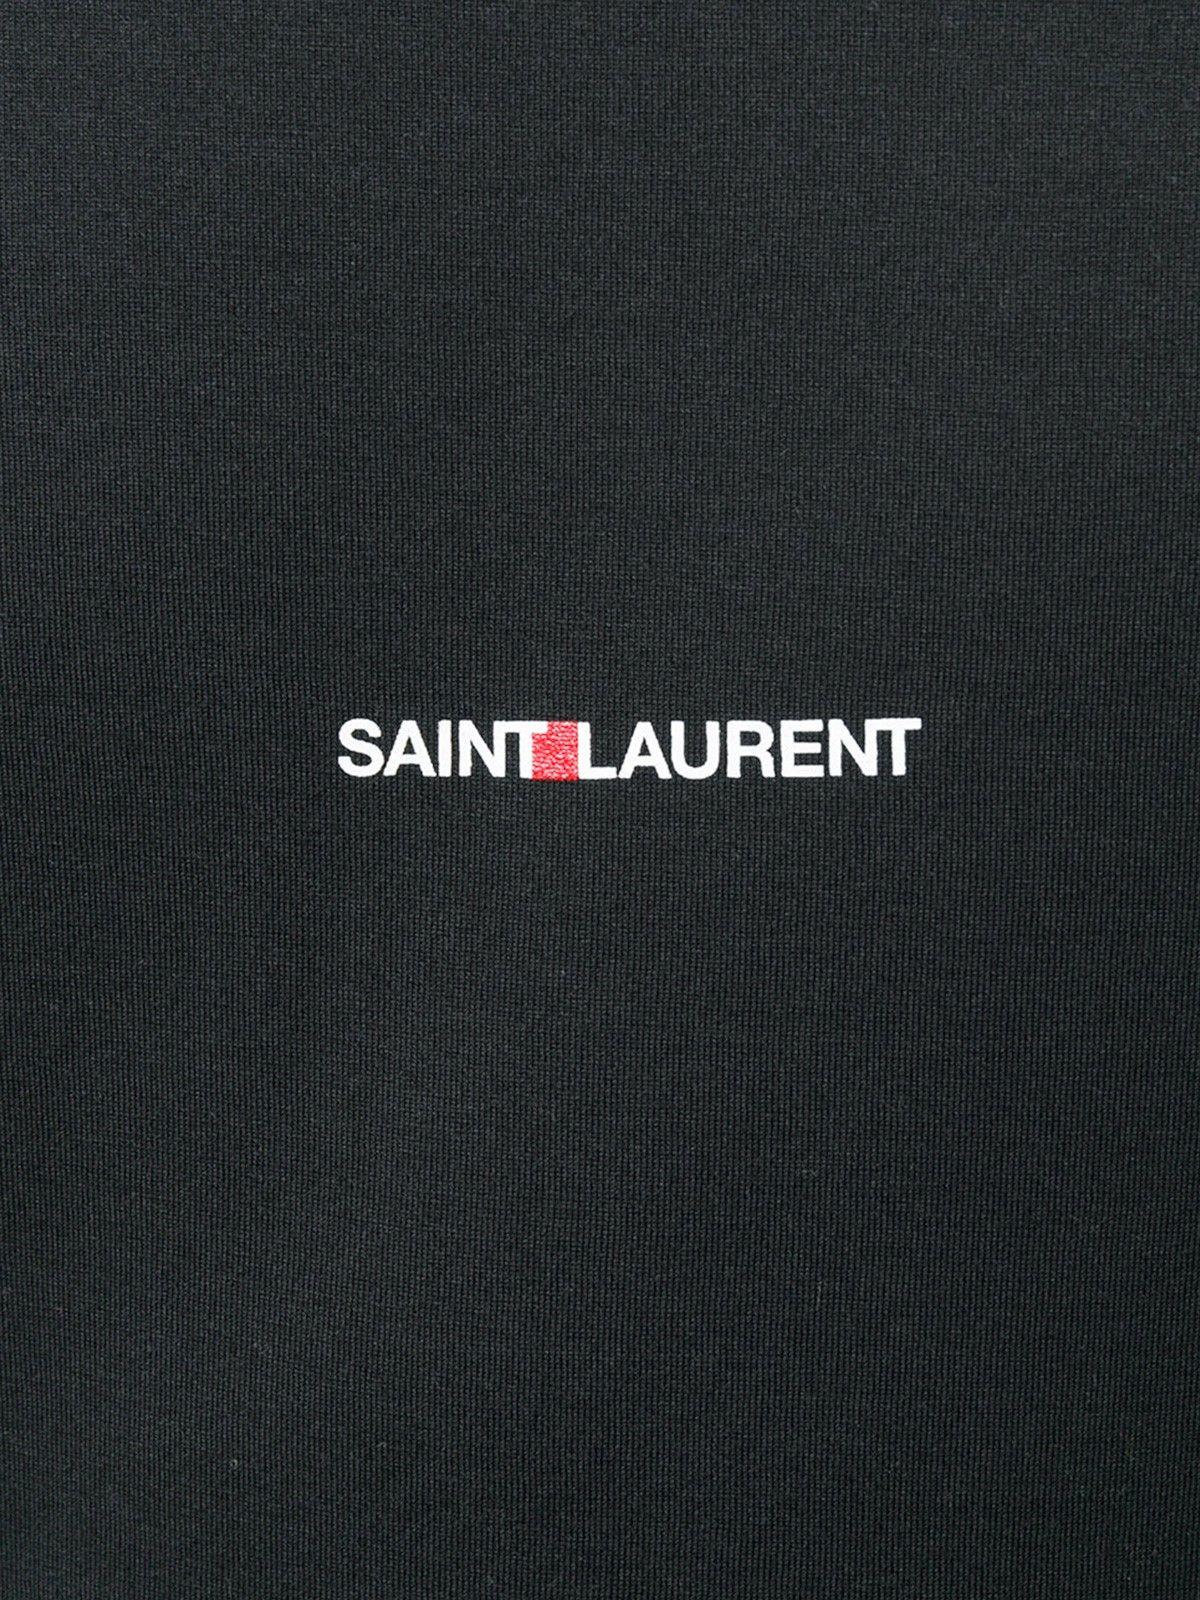 Saint Laurent Logo - Saint Laurent LOGO T SHIRT Available On Montiboutique.com